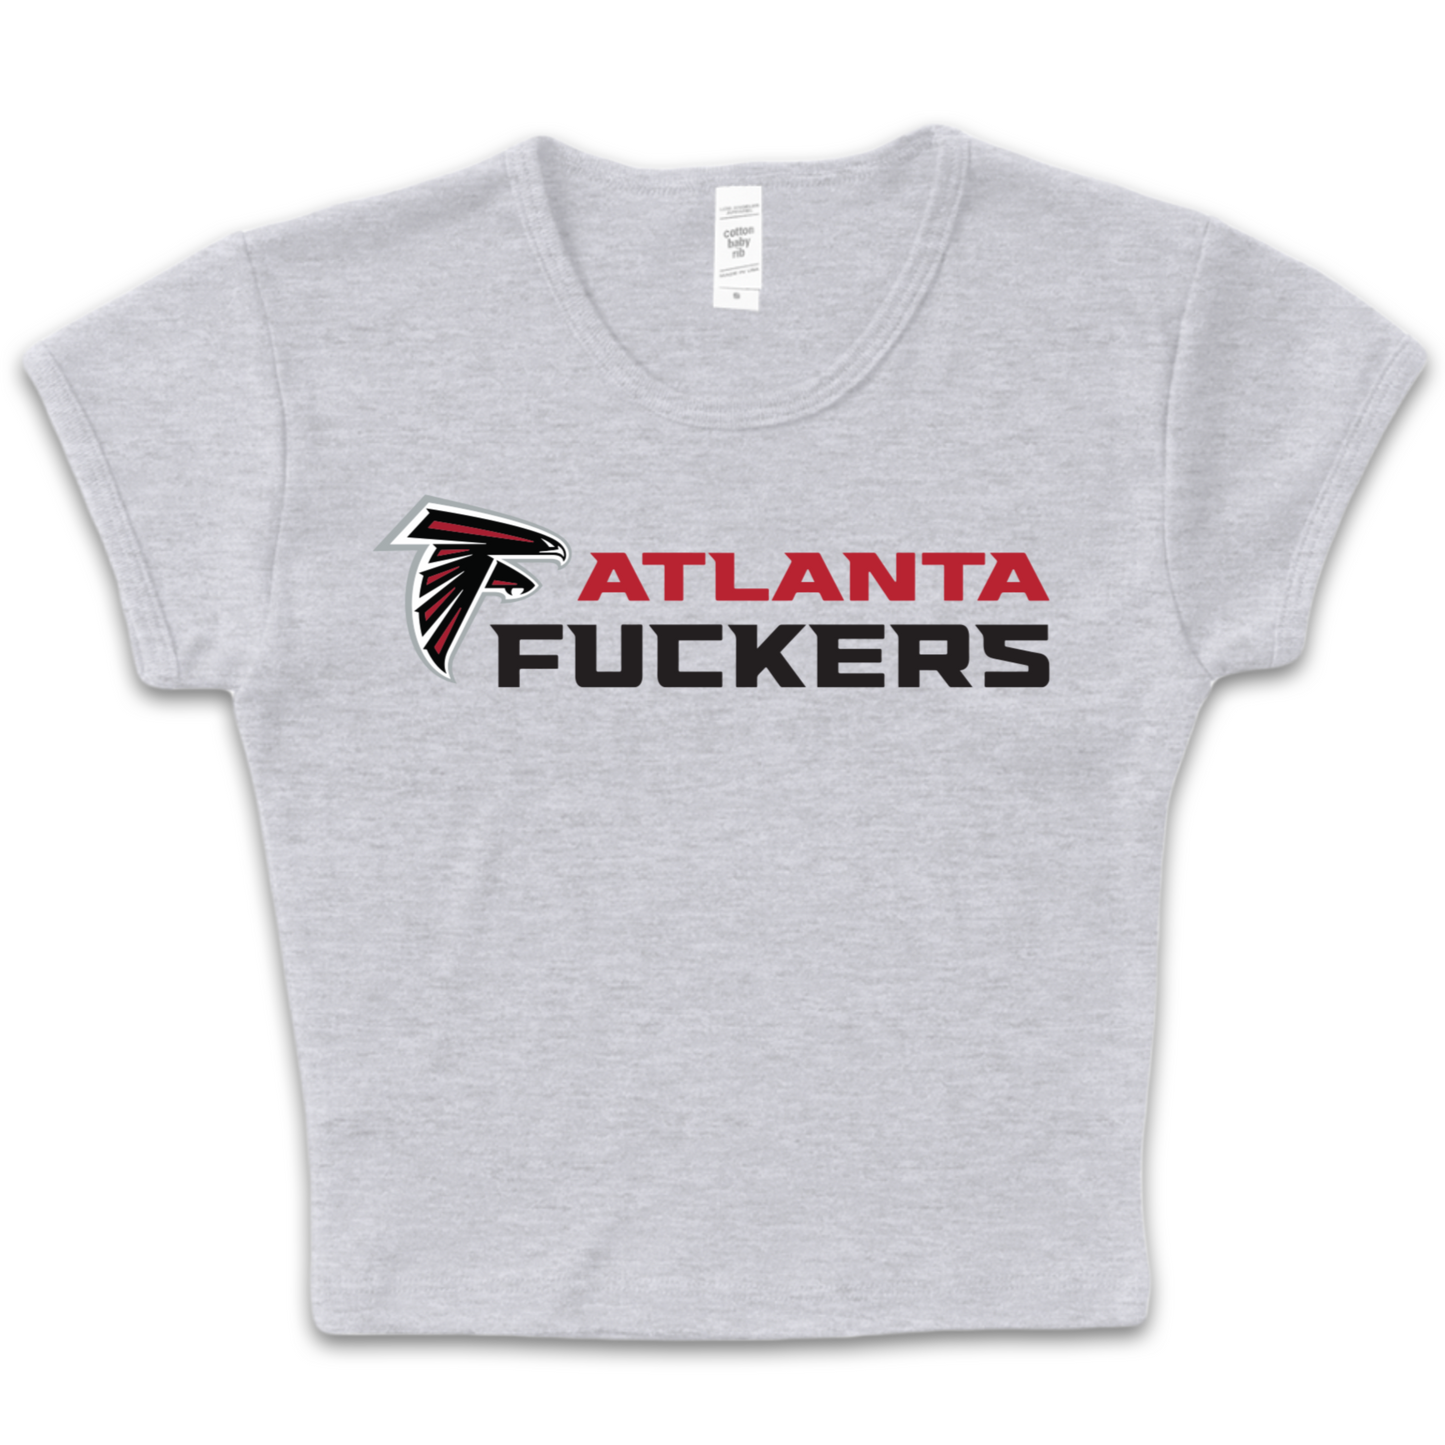 Atlanta Fuckers Baby Tee